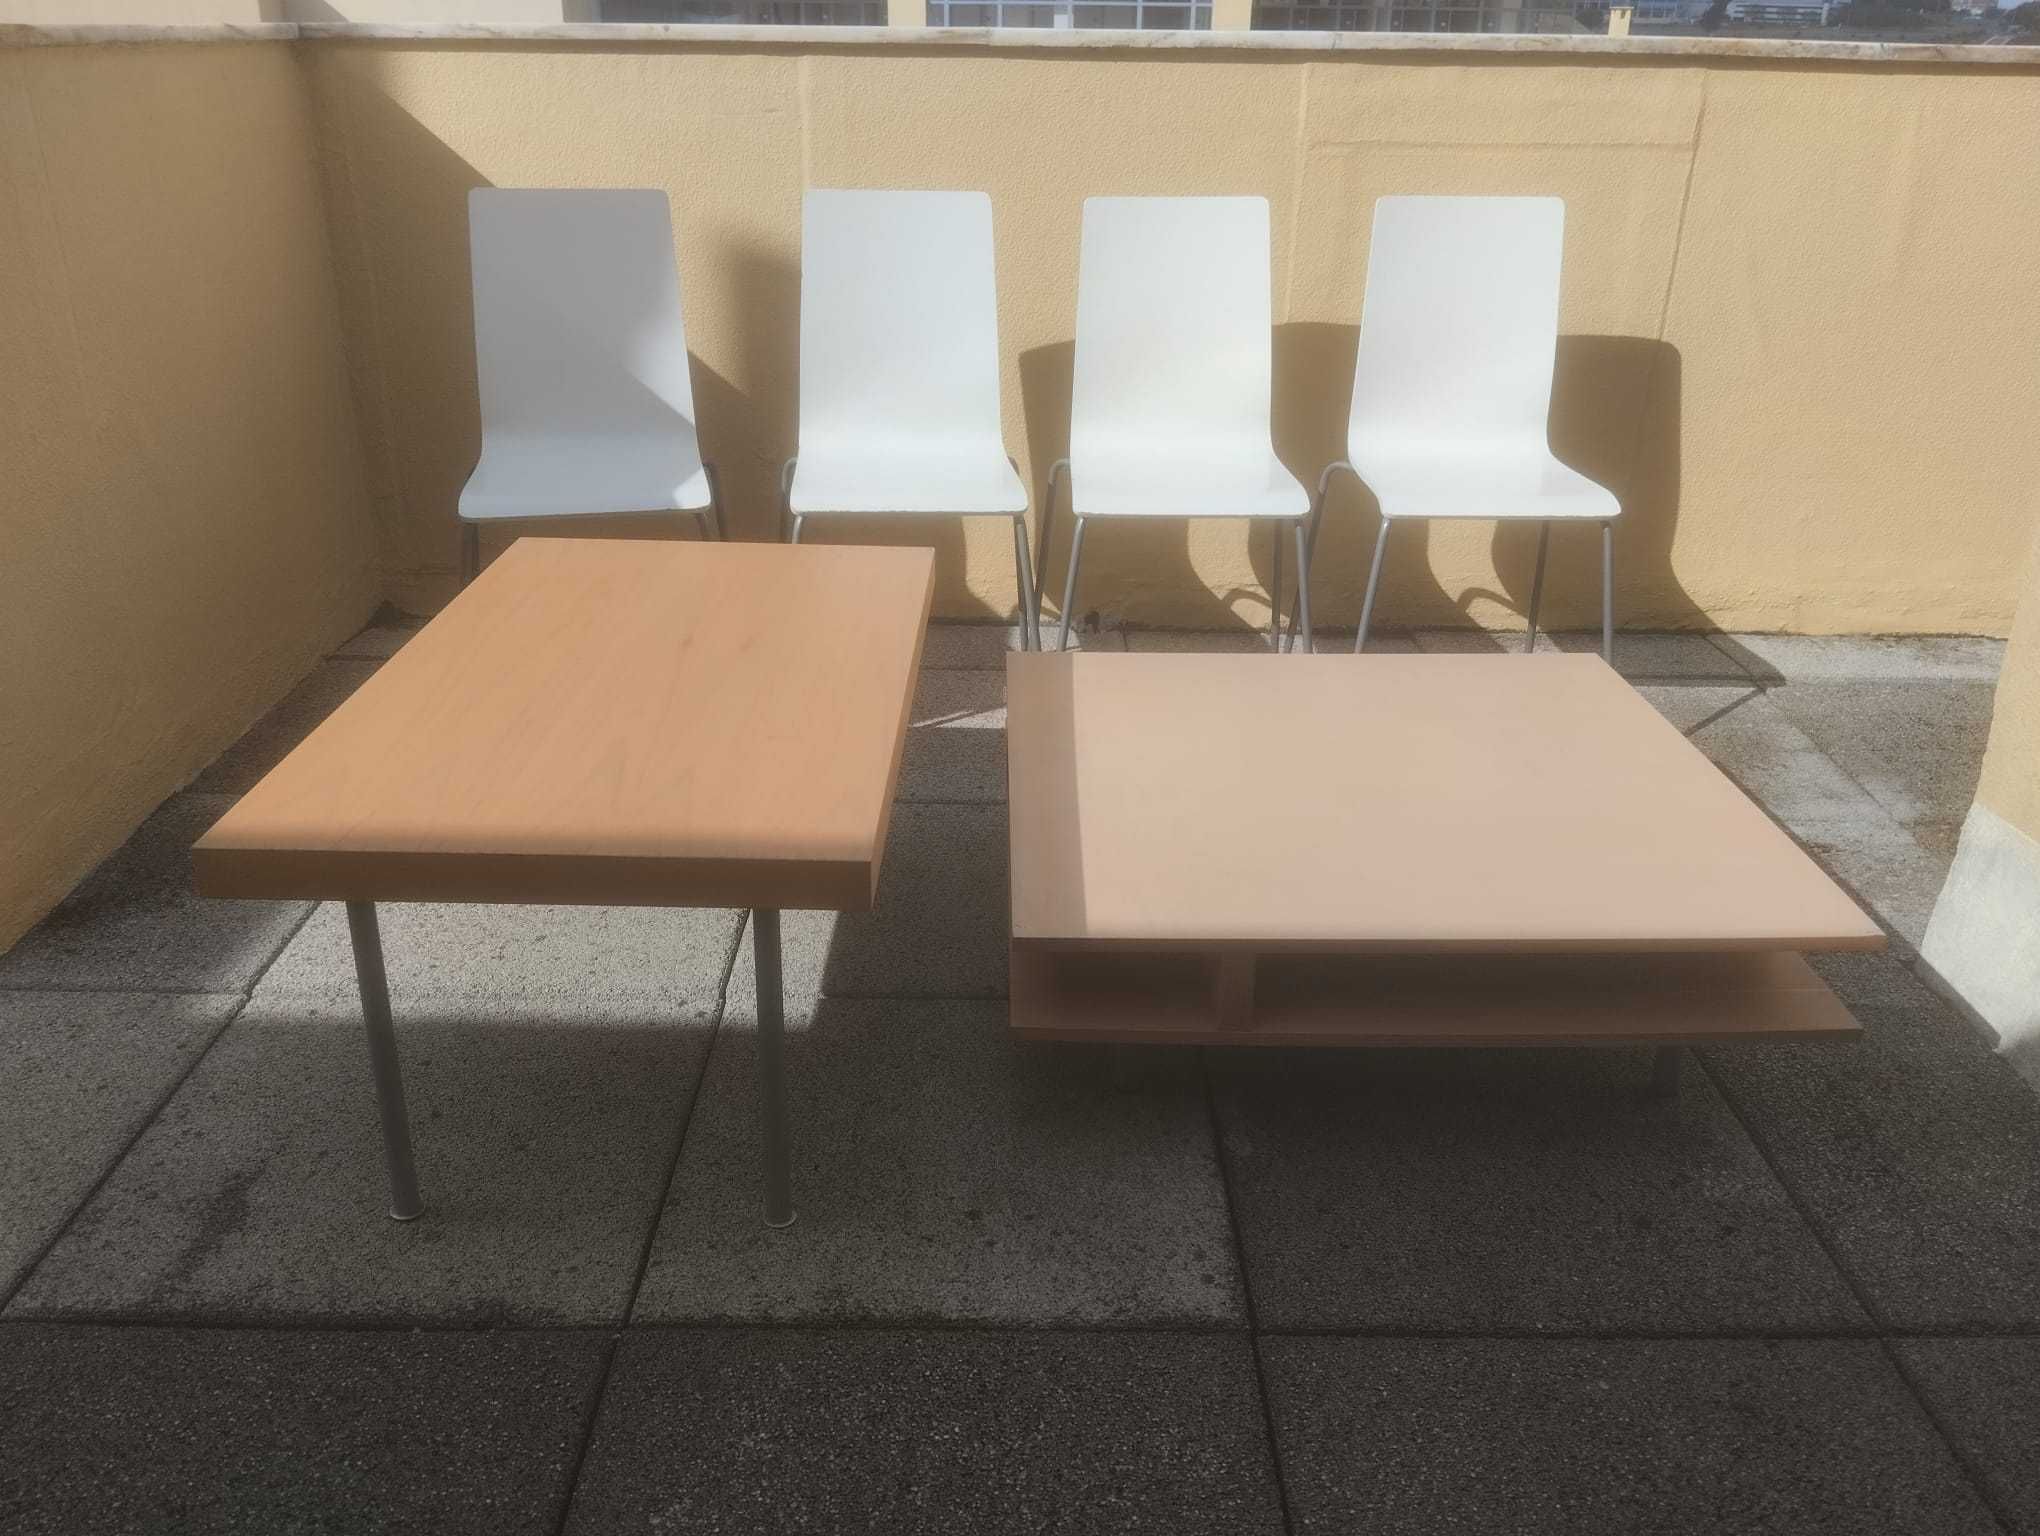 Lote de 5 peças de mobília:  Tudo por 50 eur